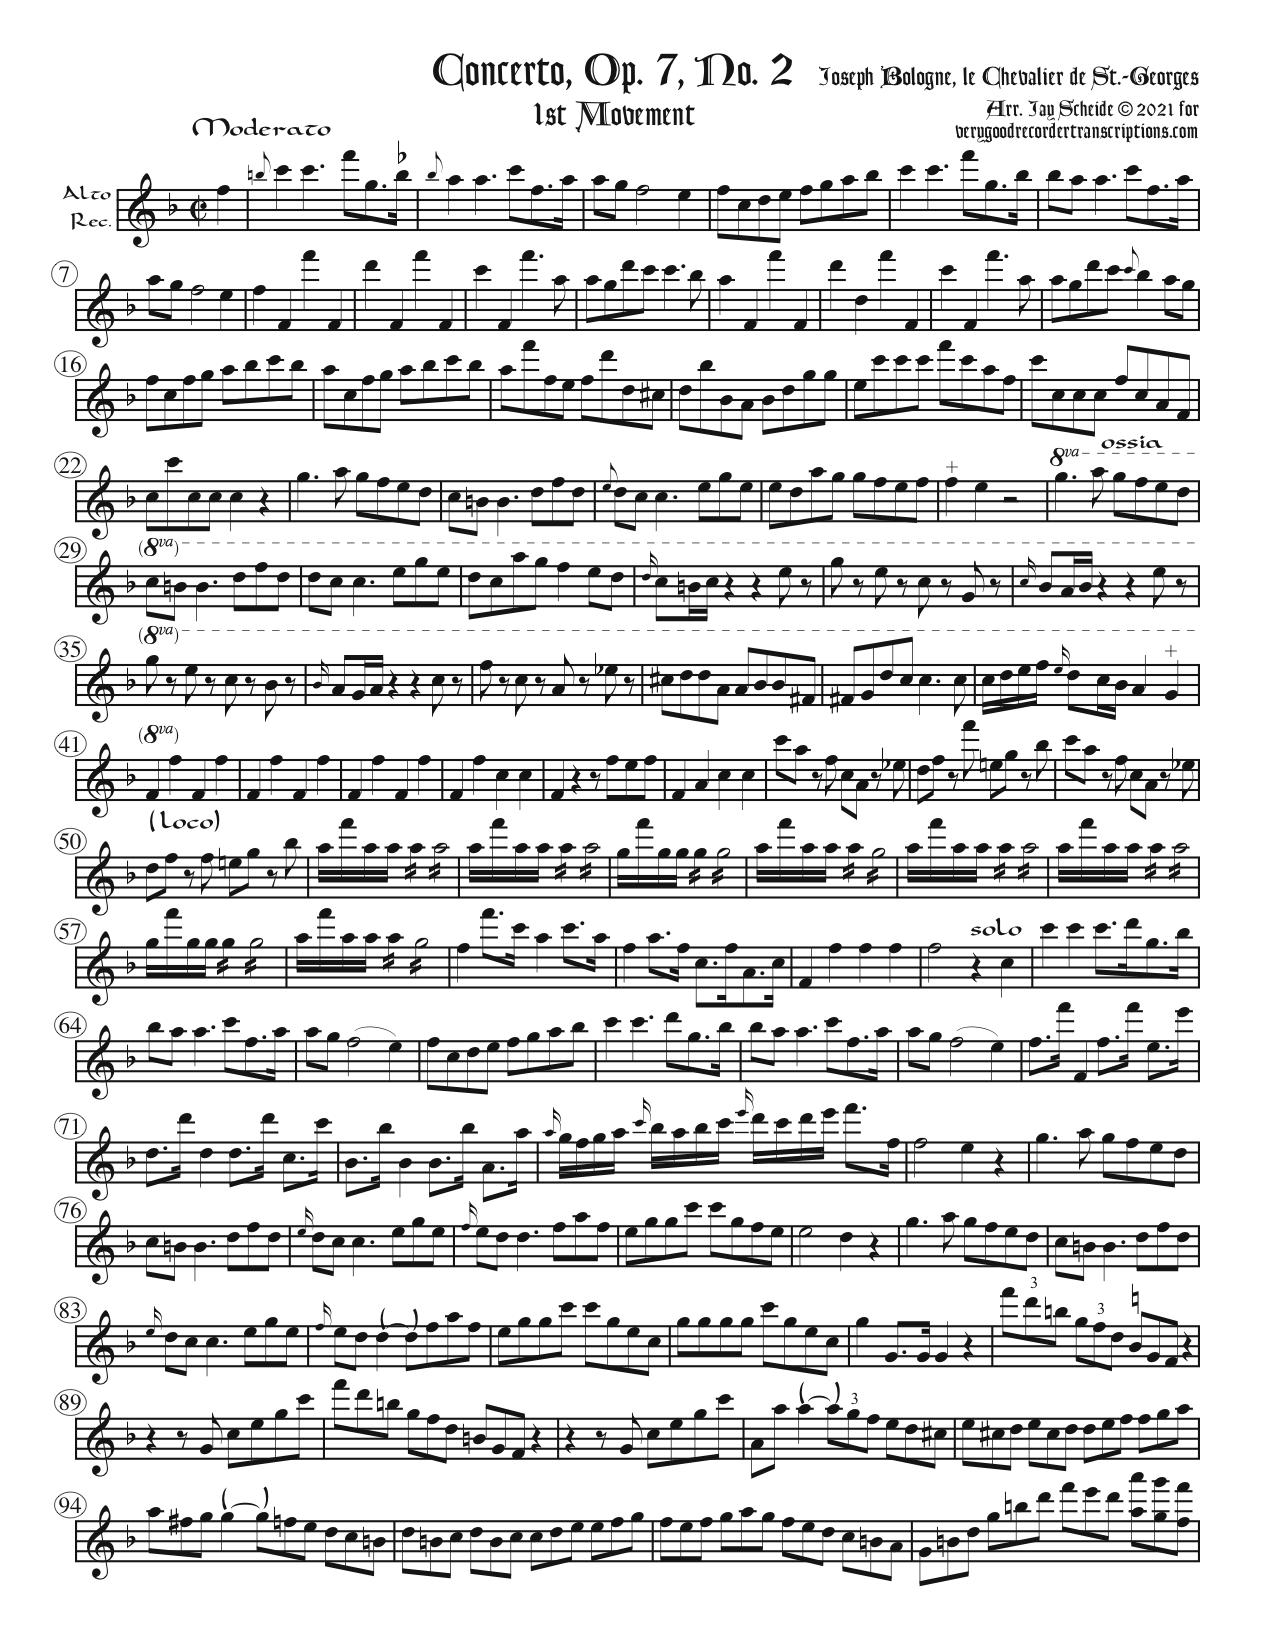 Concerto, Op. 7, No. 2